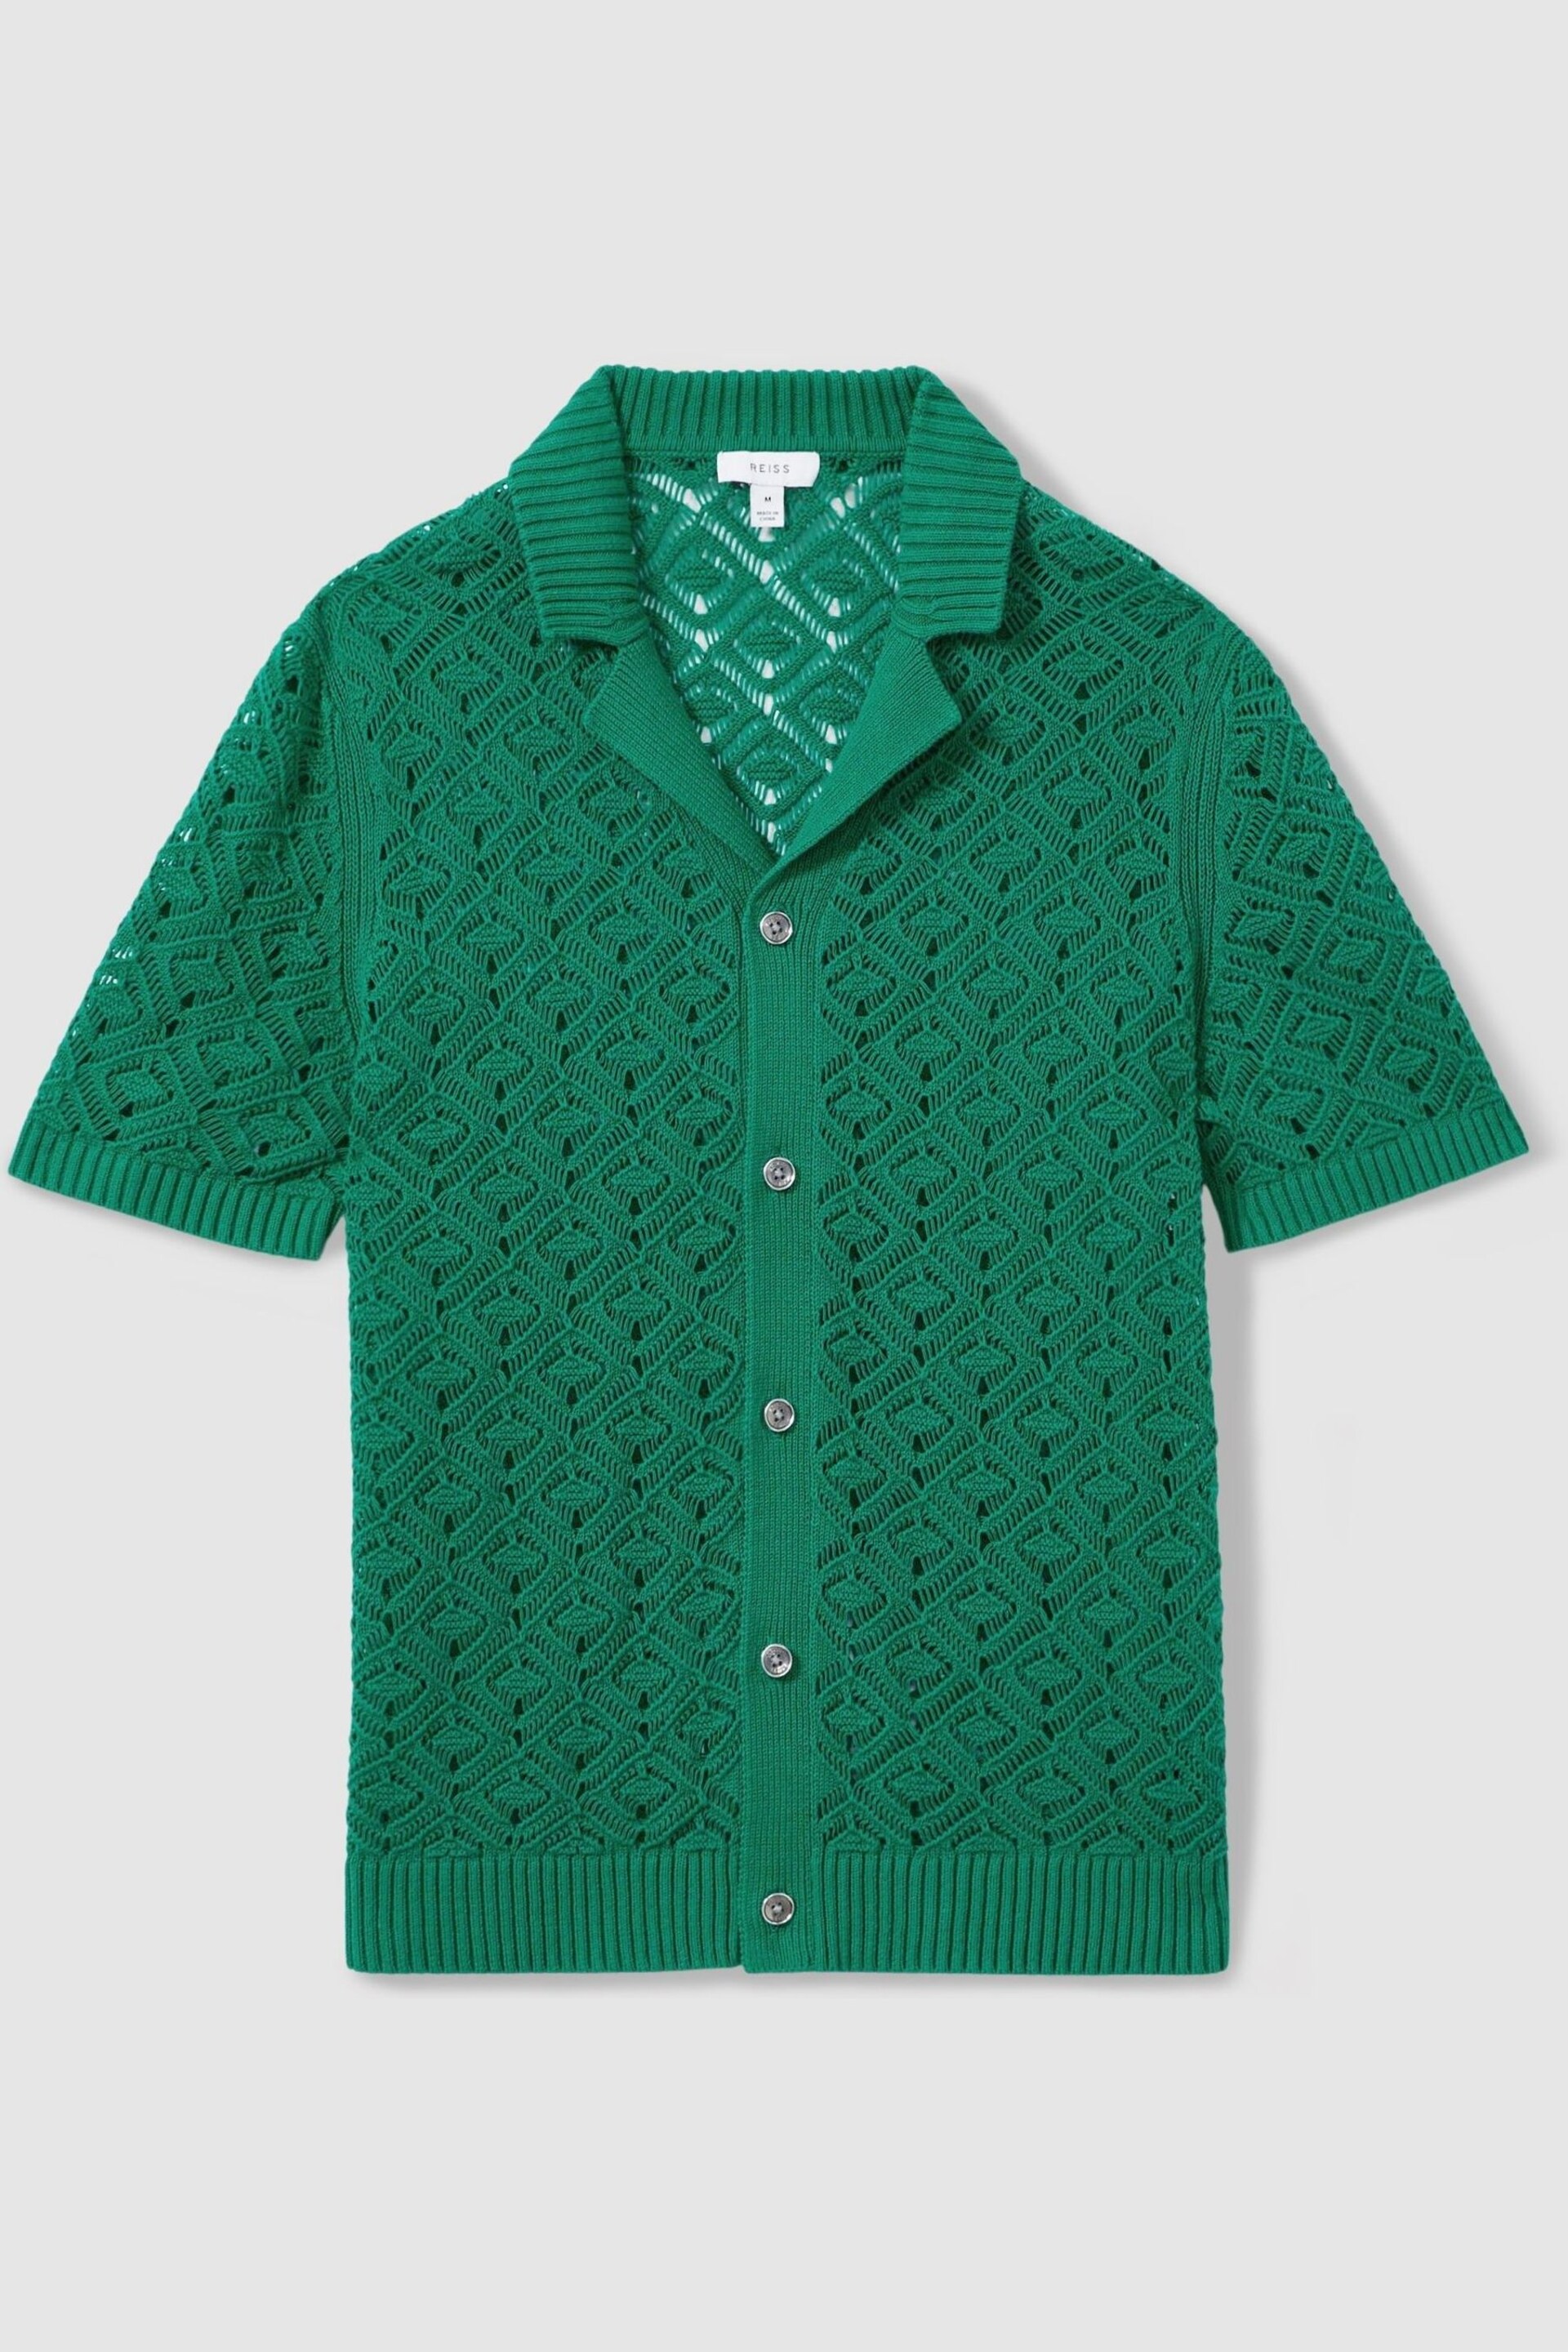 Reiss Bright Green Corsica Crochet Cuban Collar Shirt - Image 2 of 5